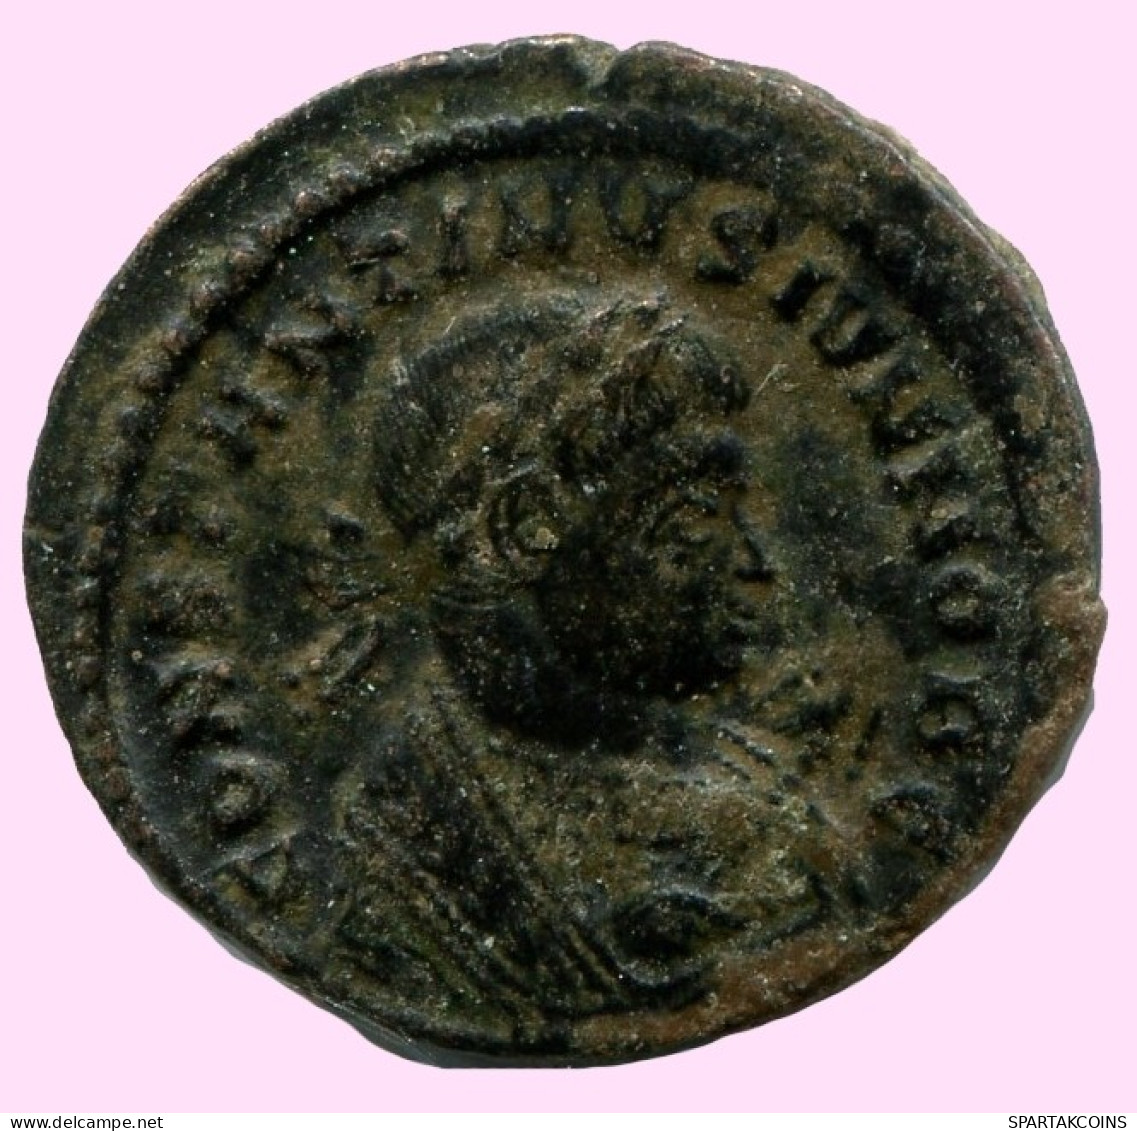 CONSTANTINE I Auténtico Original Romano ANTIGUOBronze Moneda #ANC12258.12.E.A - El Impero Christiano (307 / 363)